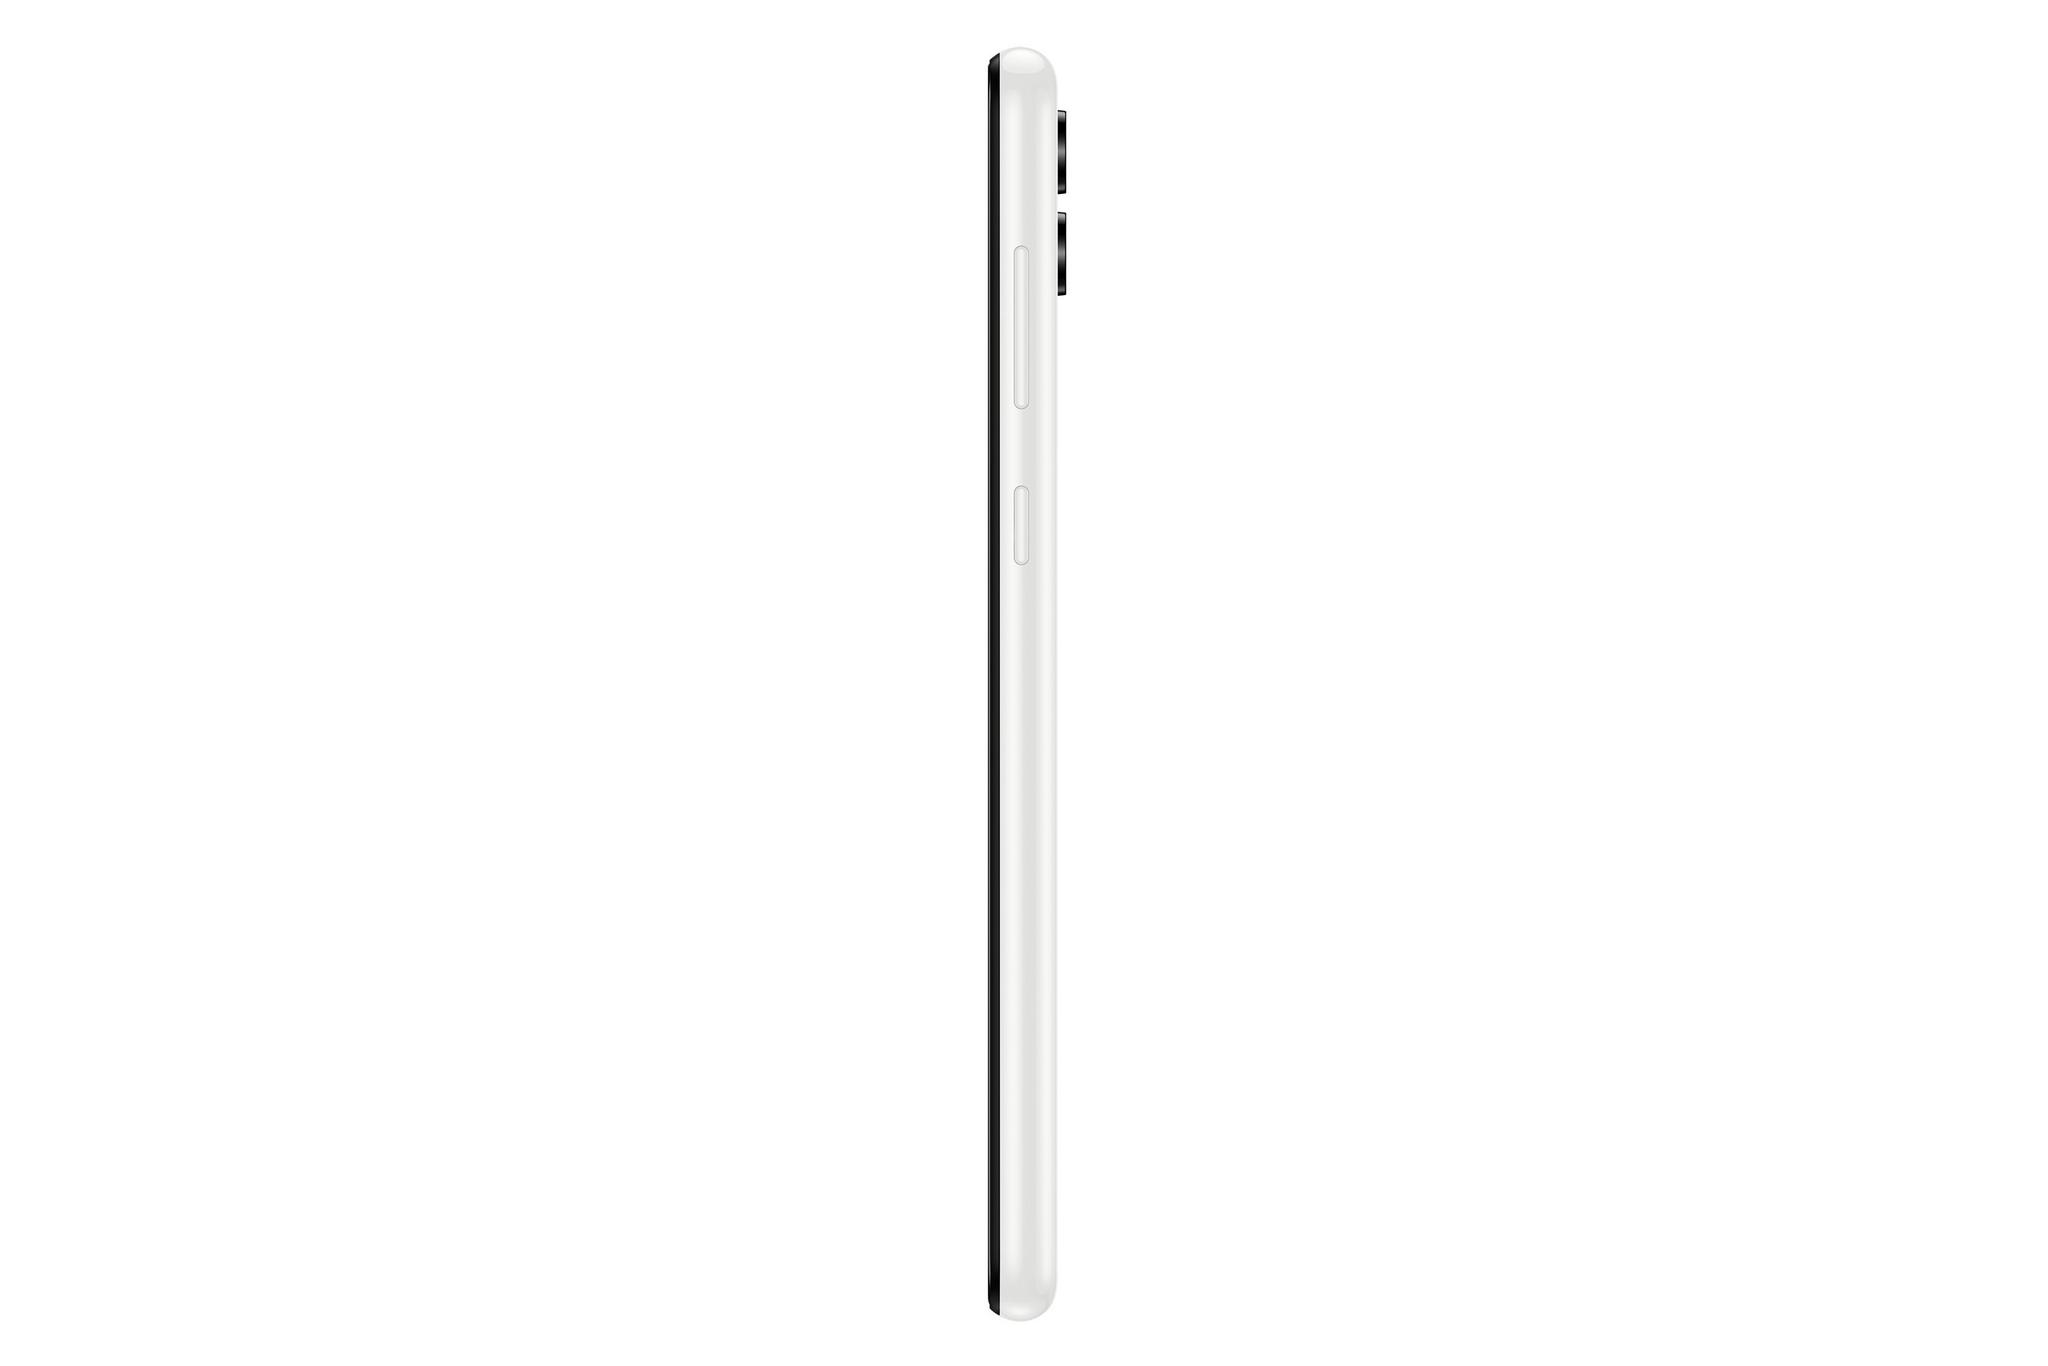 Samsung Galaxy A04 64GB Phone - White